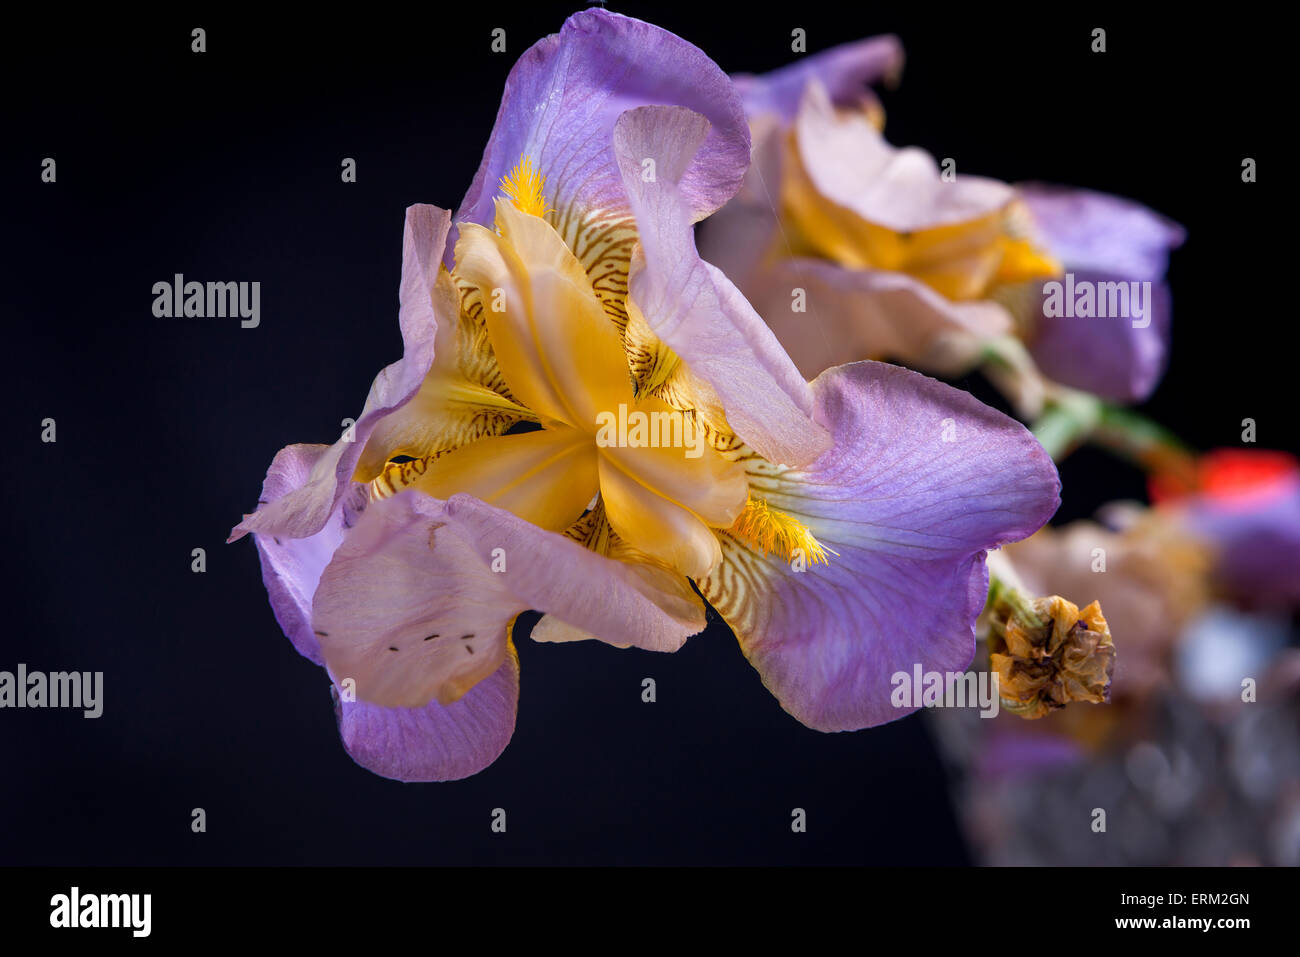 Macro of Iris flower. Stock Photo